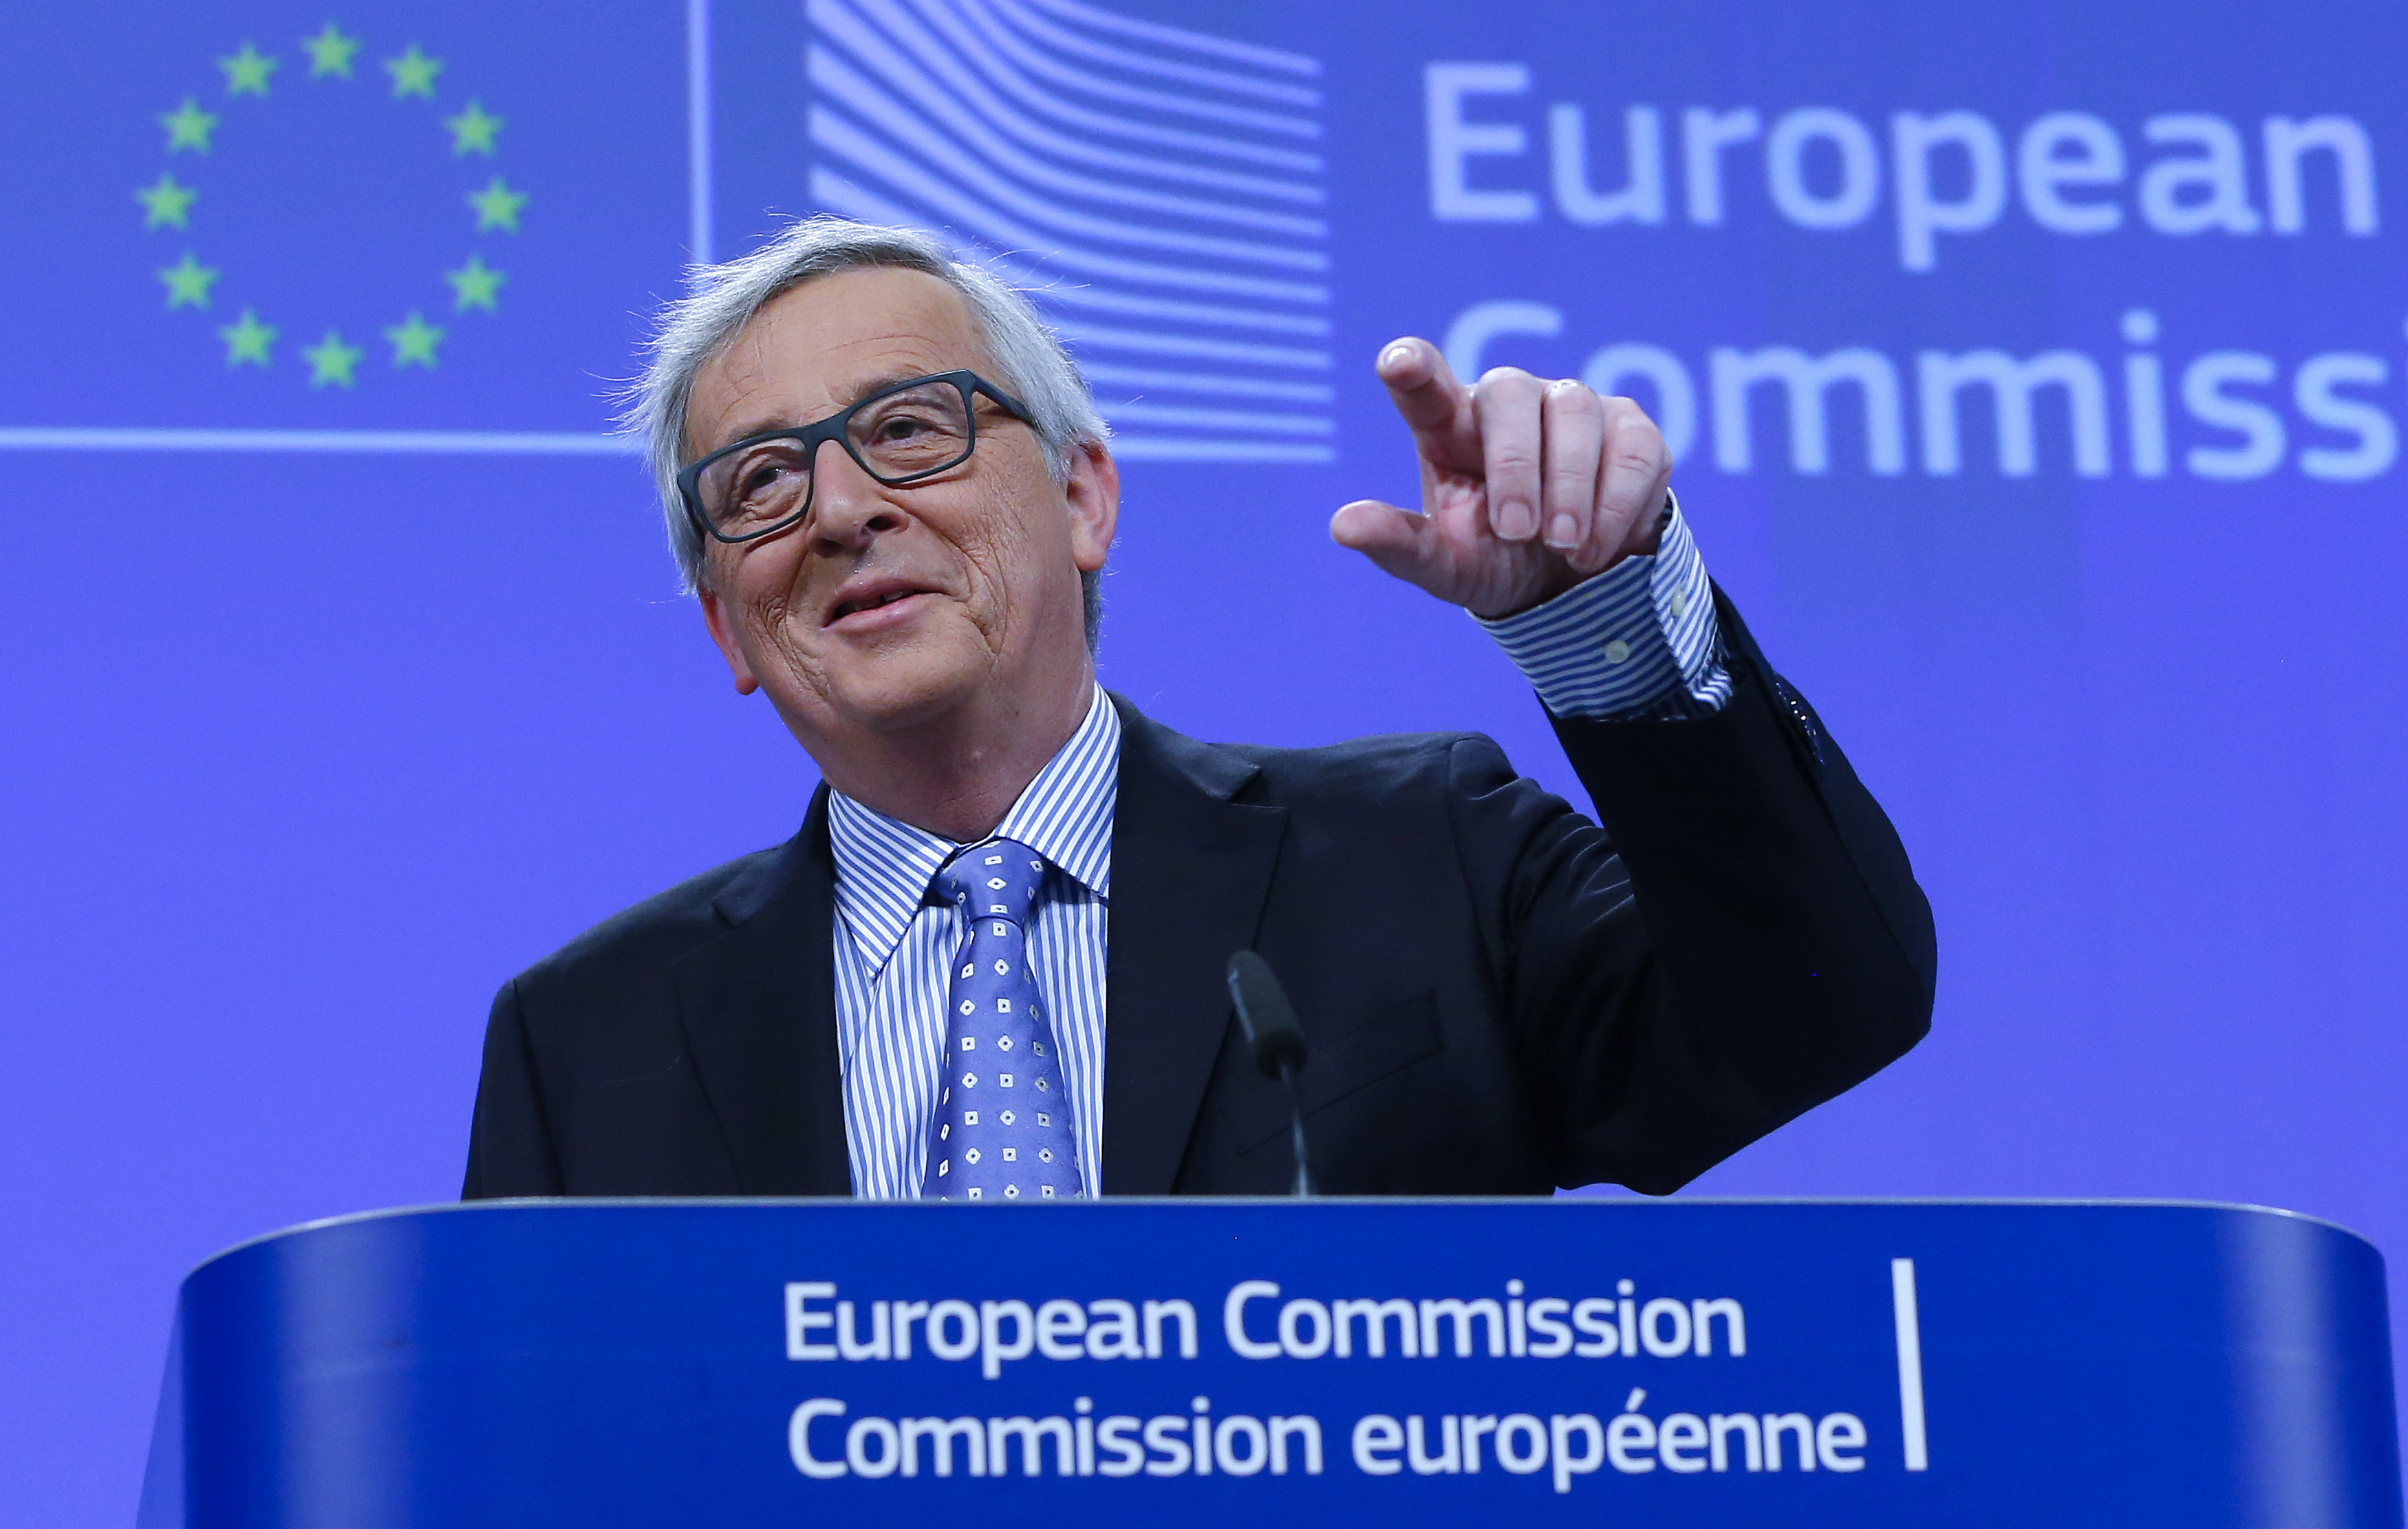 Para Juncker, el fracaso de las políticas europeas para la recepción de refugiados no es responsabilidad de la CE, sino de determinados países miembros.